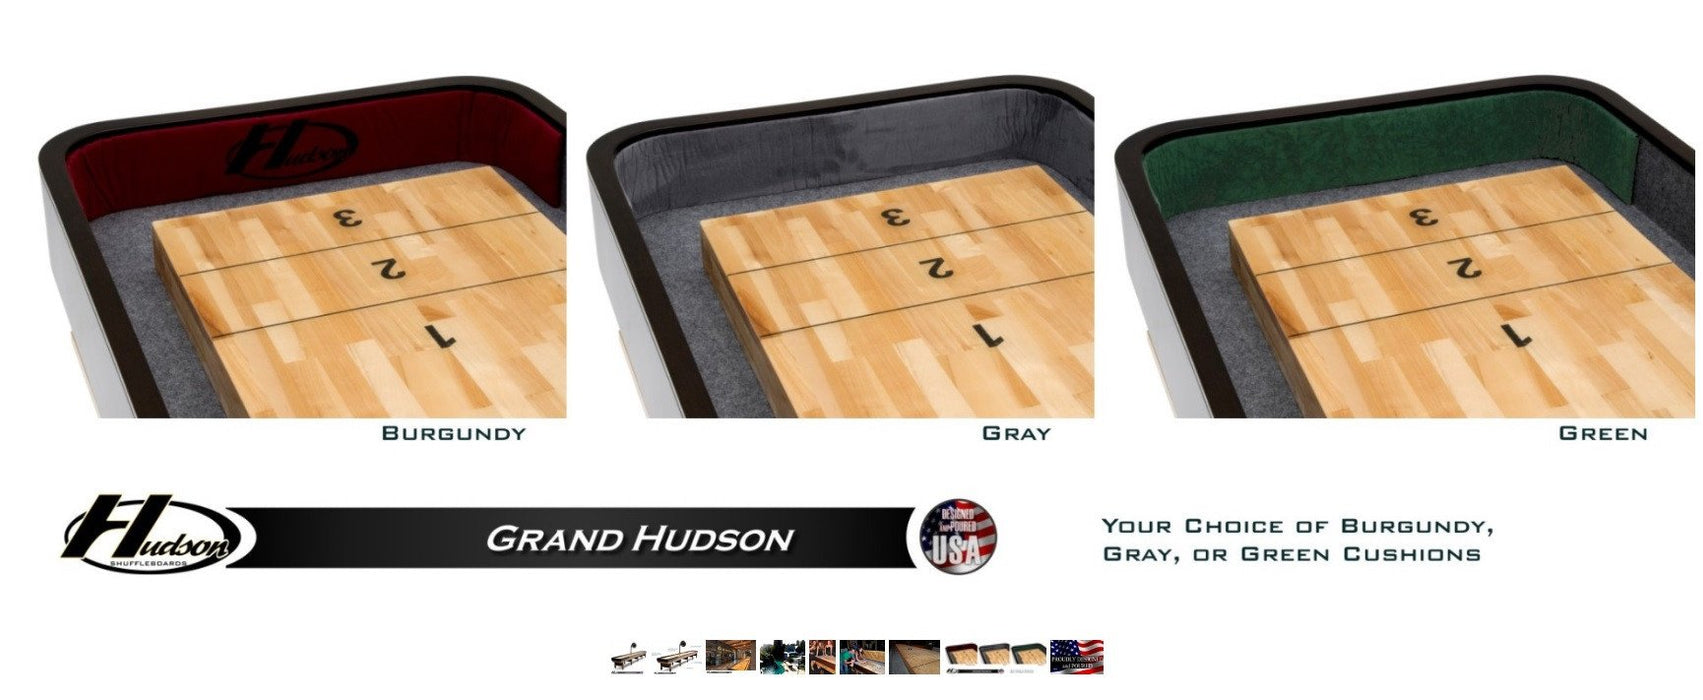 Hudson 12' Grand Hudson Shuffleboard Table